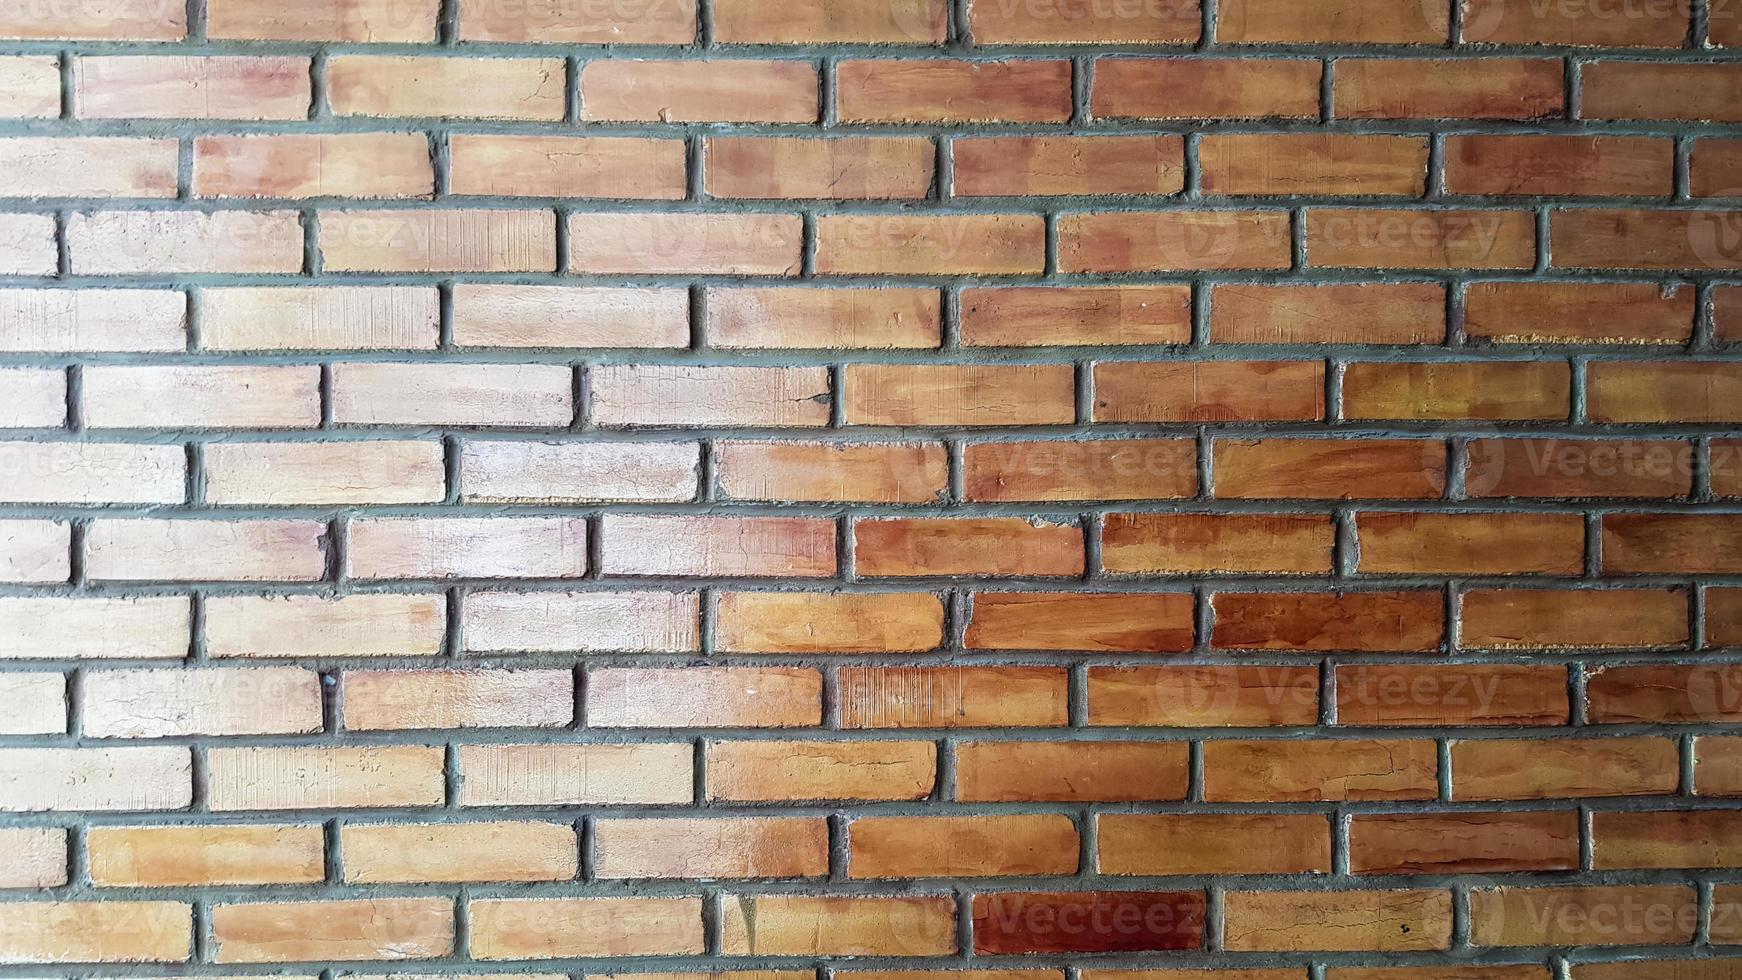 vecchio muro di mattoni rossi strutturato. una foto di mattoni dall'aspetto gradevole.